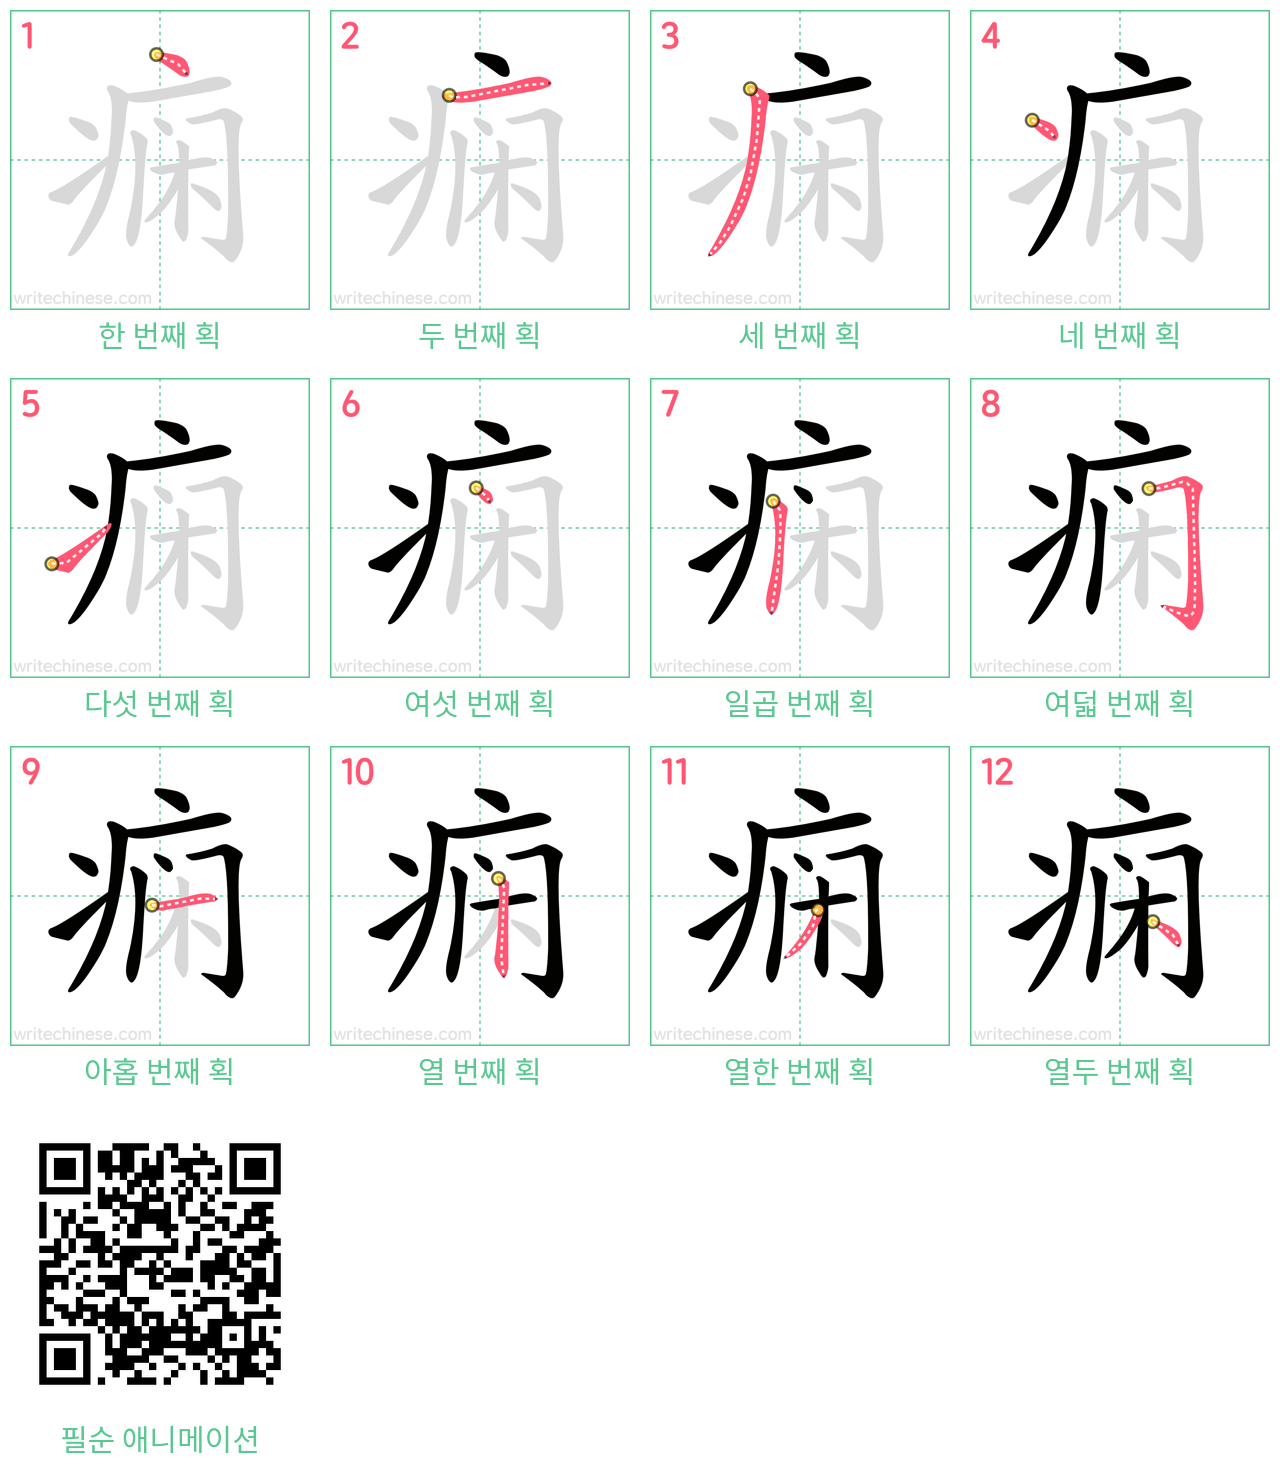 痫 step-by-step stroke order diagrams